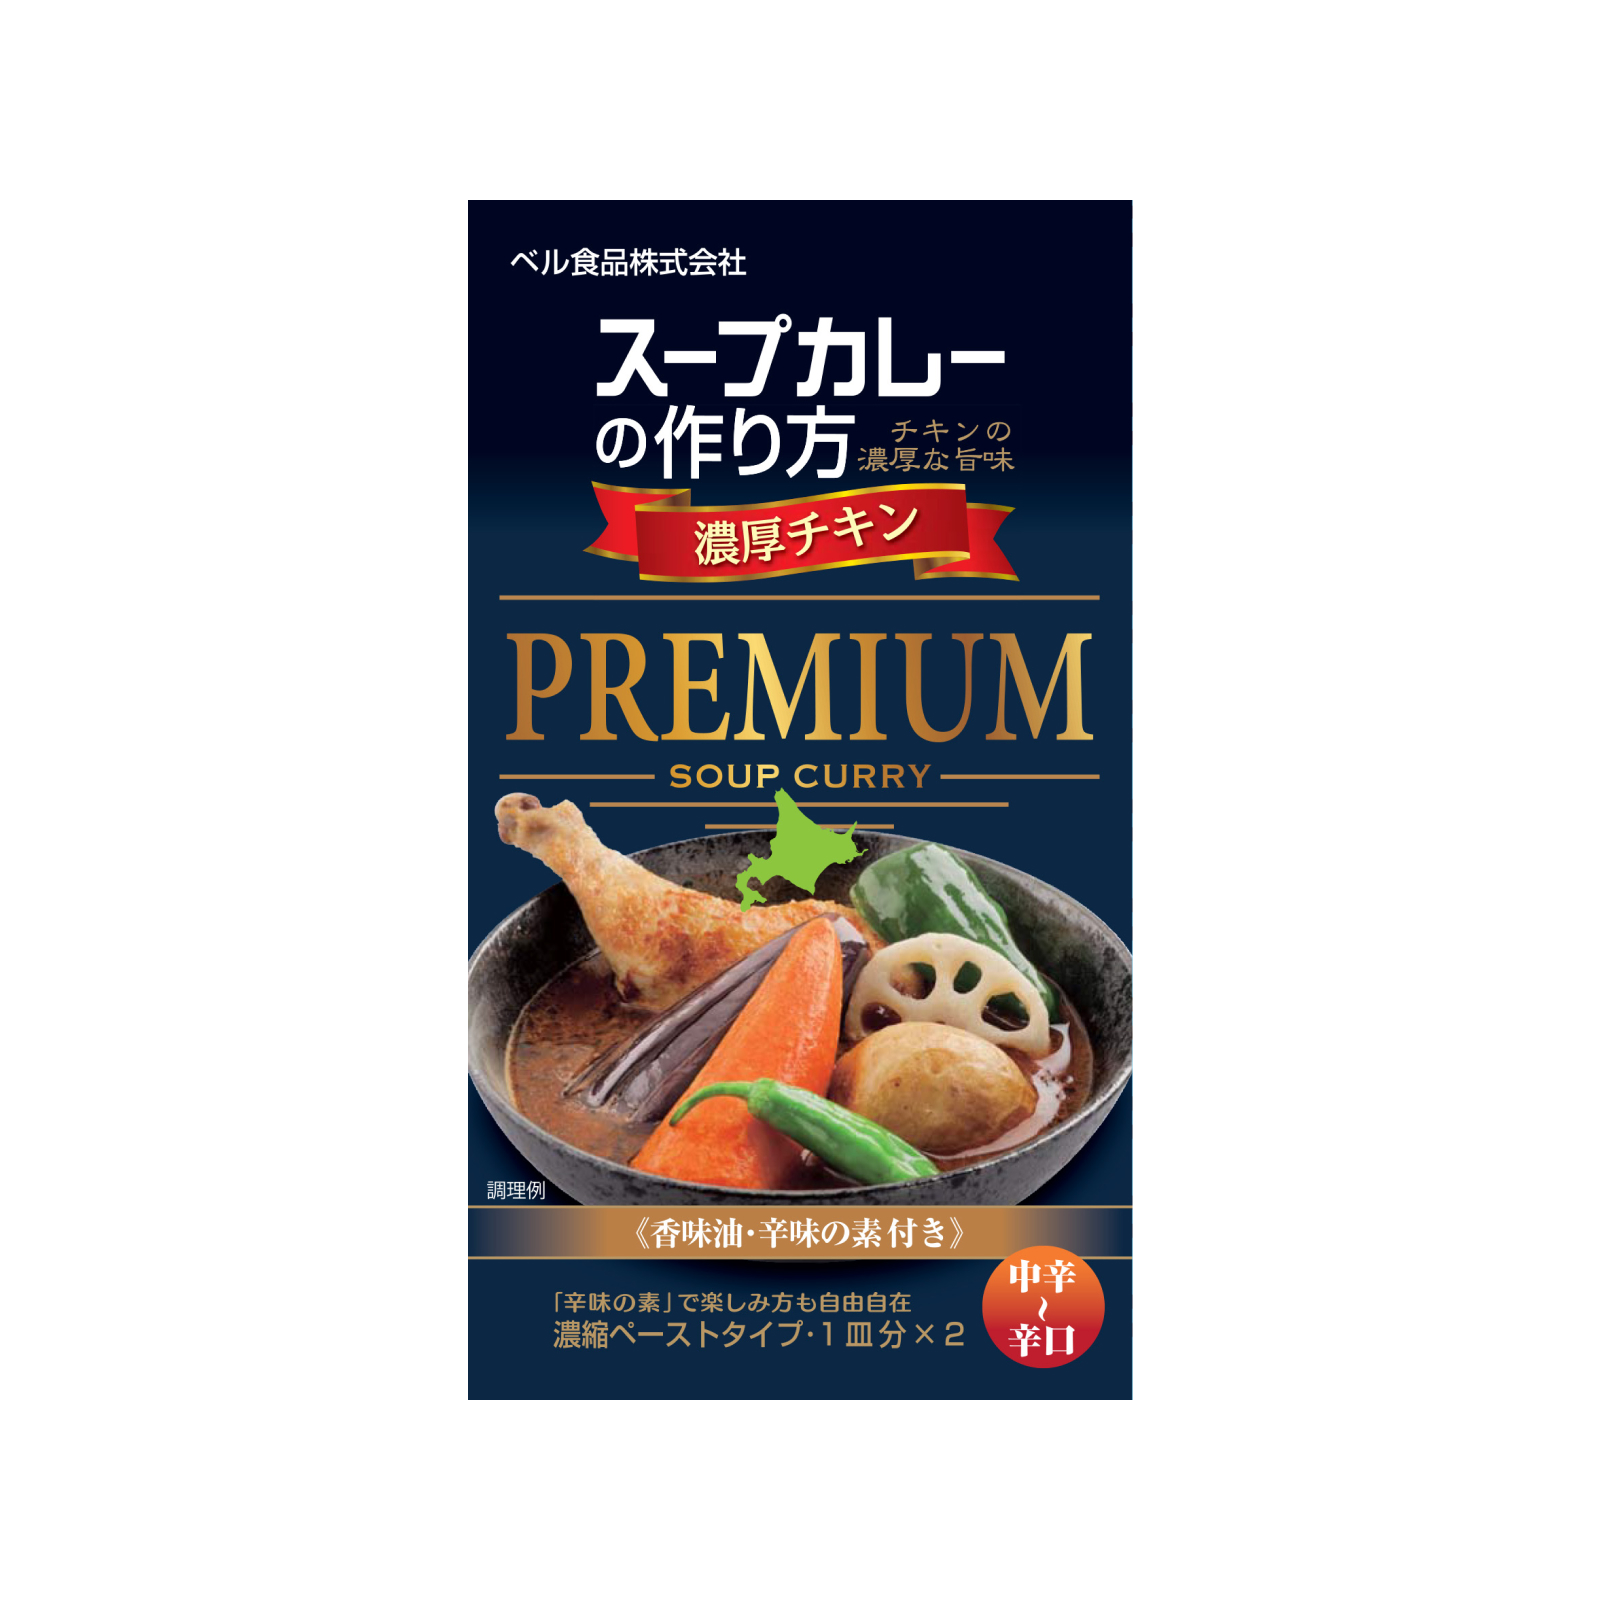 ベル食品 スープカレーの作り方 プレミアム 濃厚チキン 122g×1箱の商品画像